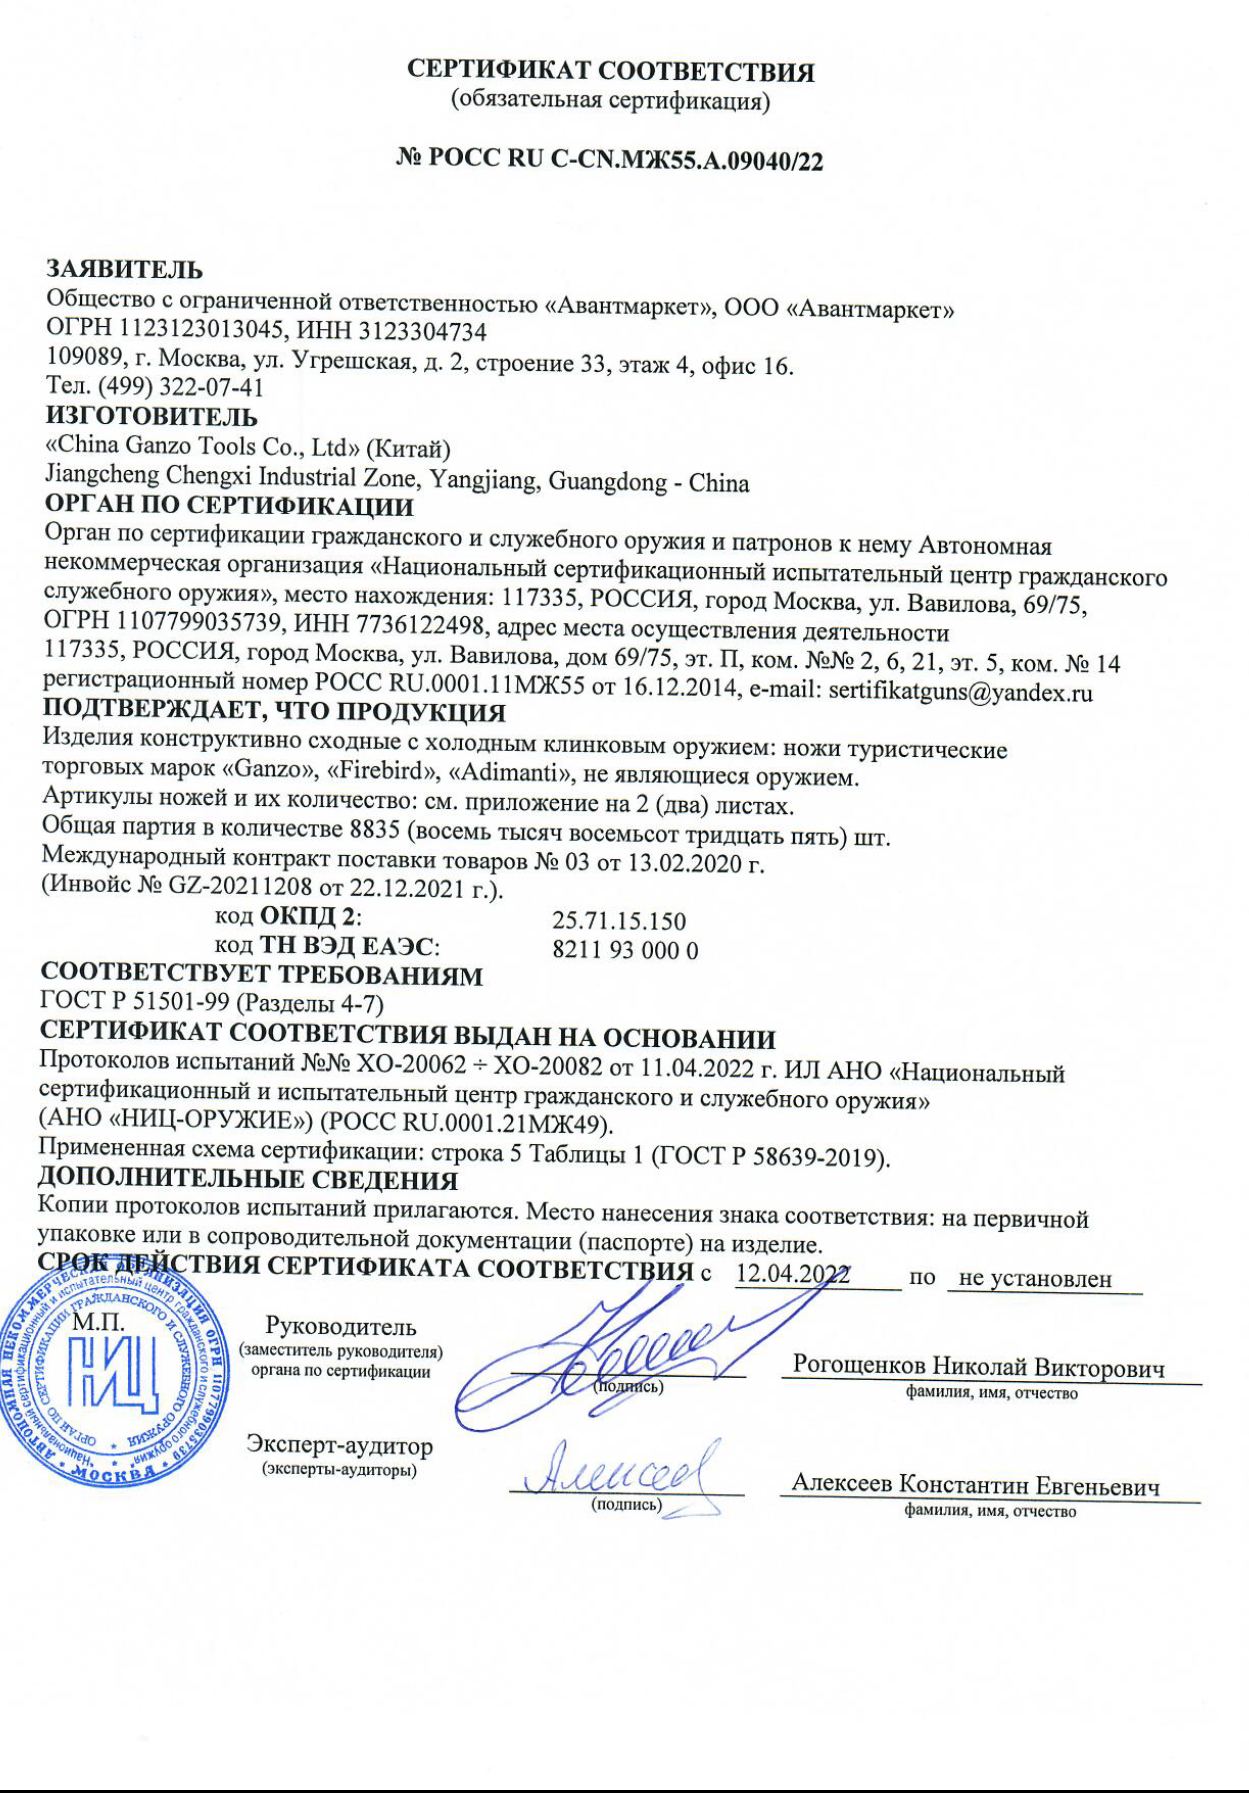 *Сертификат* Нож складной туристический Firebird FH91-BK Сертификат соответствия №РОСС RU C-CN.МЖ.А.06540/21 сертификат Нож Firebird (1)